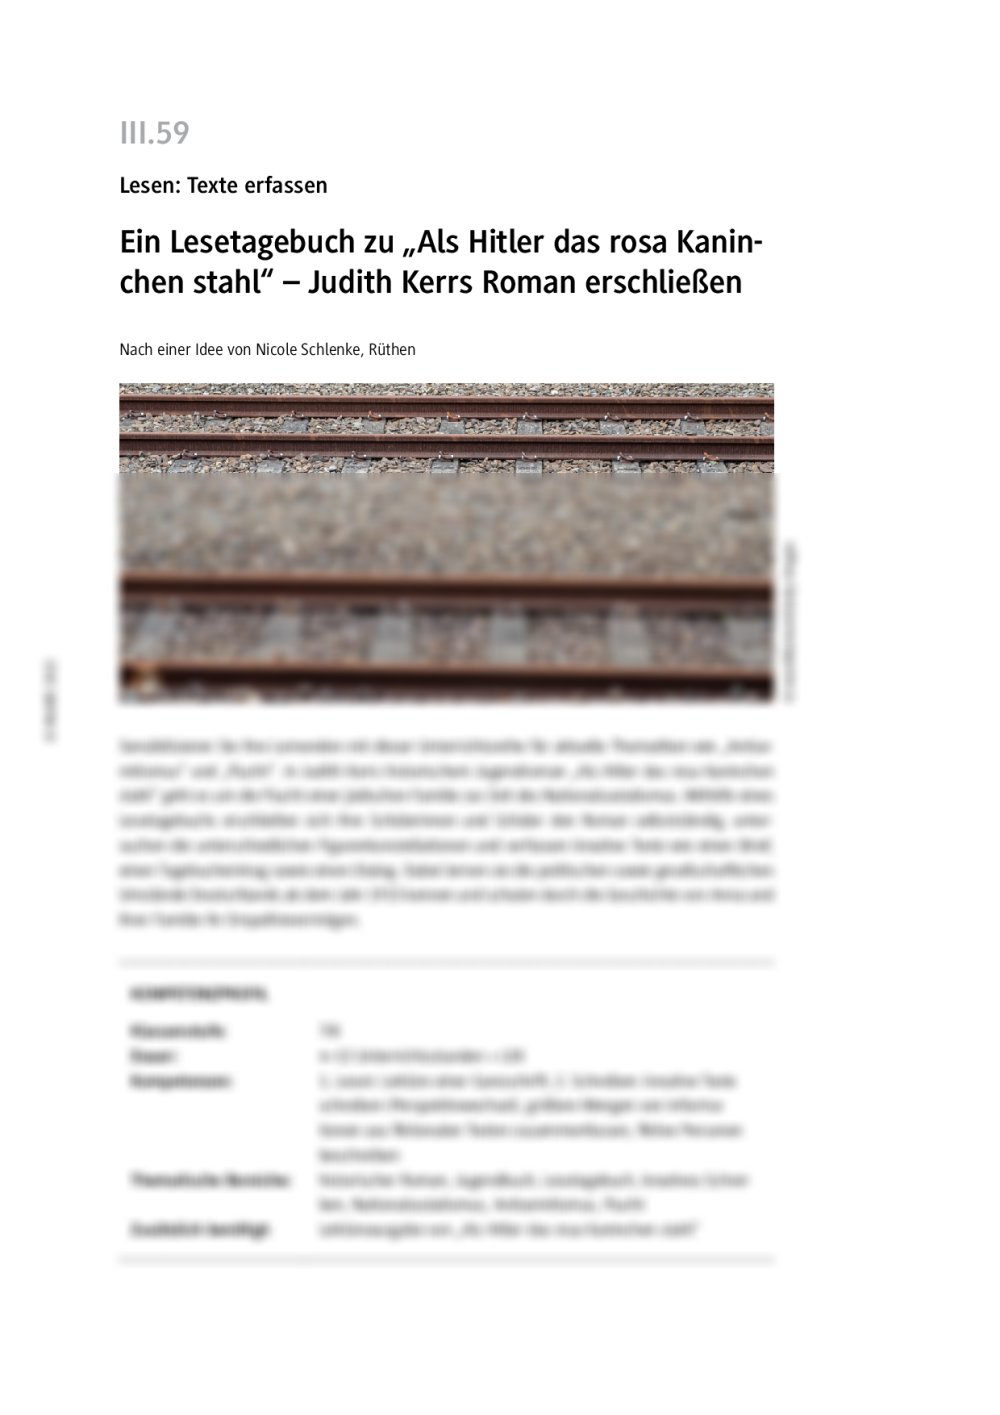 Ein Lesetagebuch zu "Als Hitler das rosa Kaninchen stahl" - Seite 1